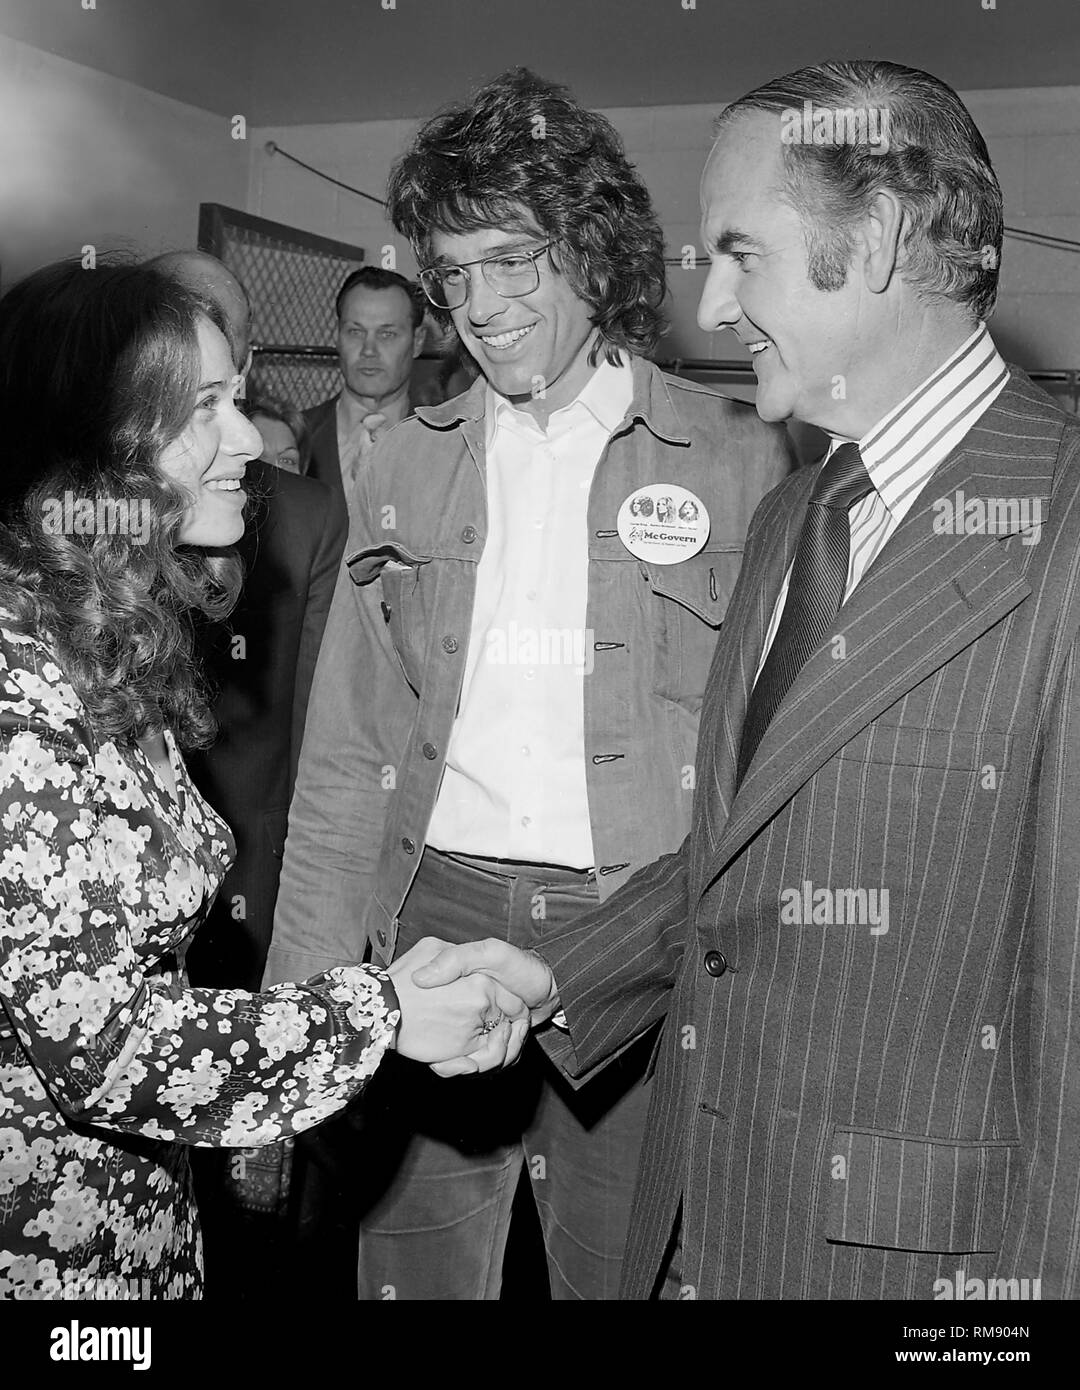 Il cantante Carole King saluta il candidato presidenziale George McGovern prima di un concerto di beneficenza in aprile 15, 1972 Al Forum di Los Angeles con James Taylor, Carole King, Barbra Streisand e Quincy Jones. Foto Stock